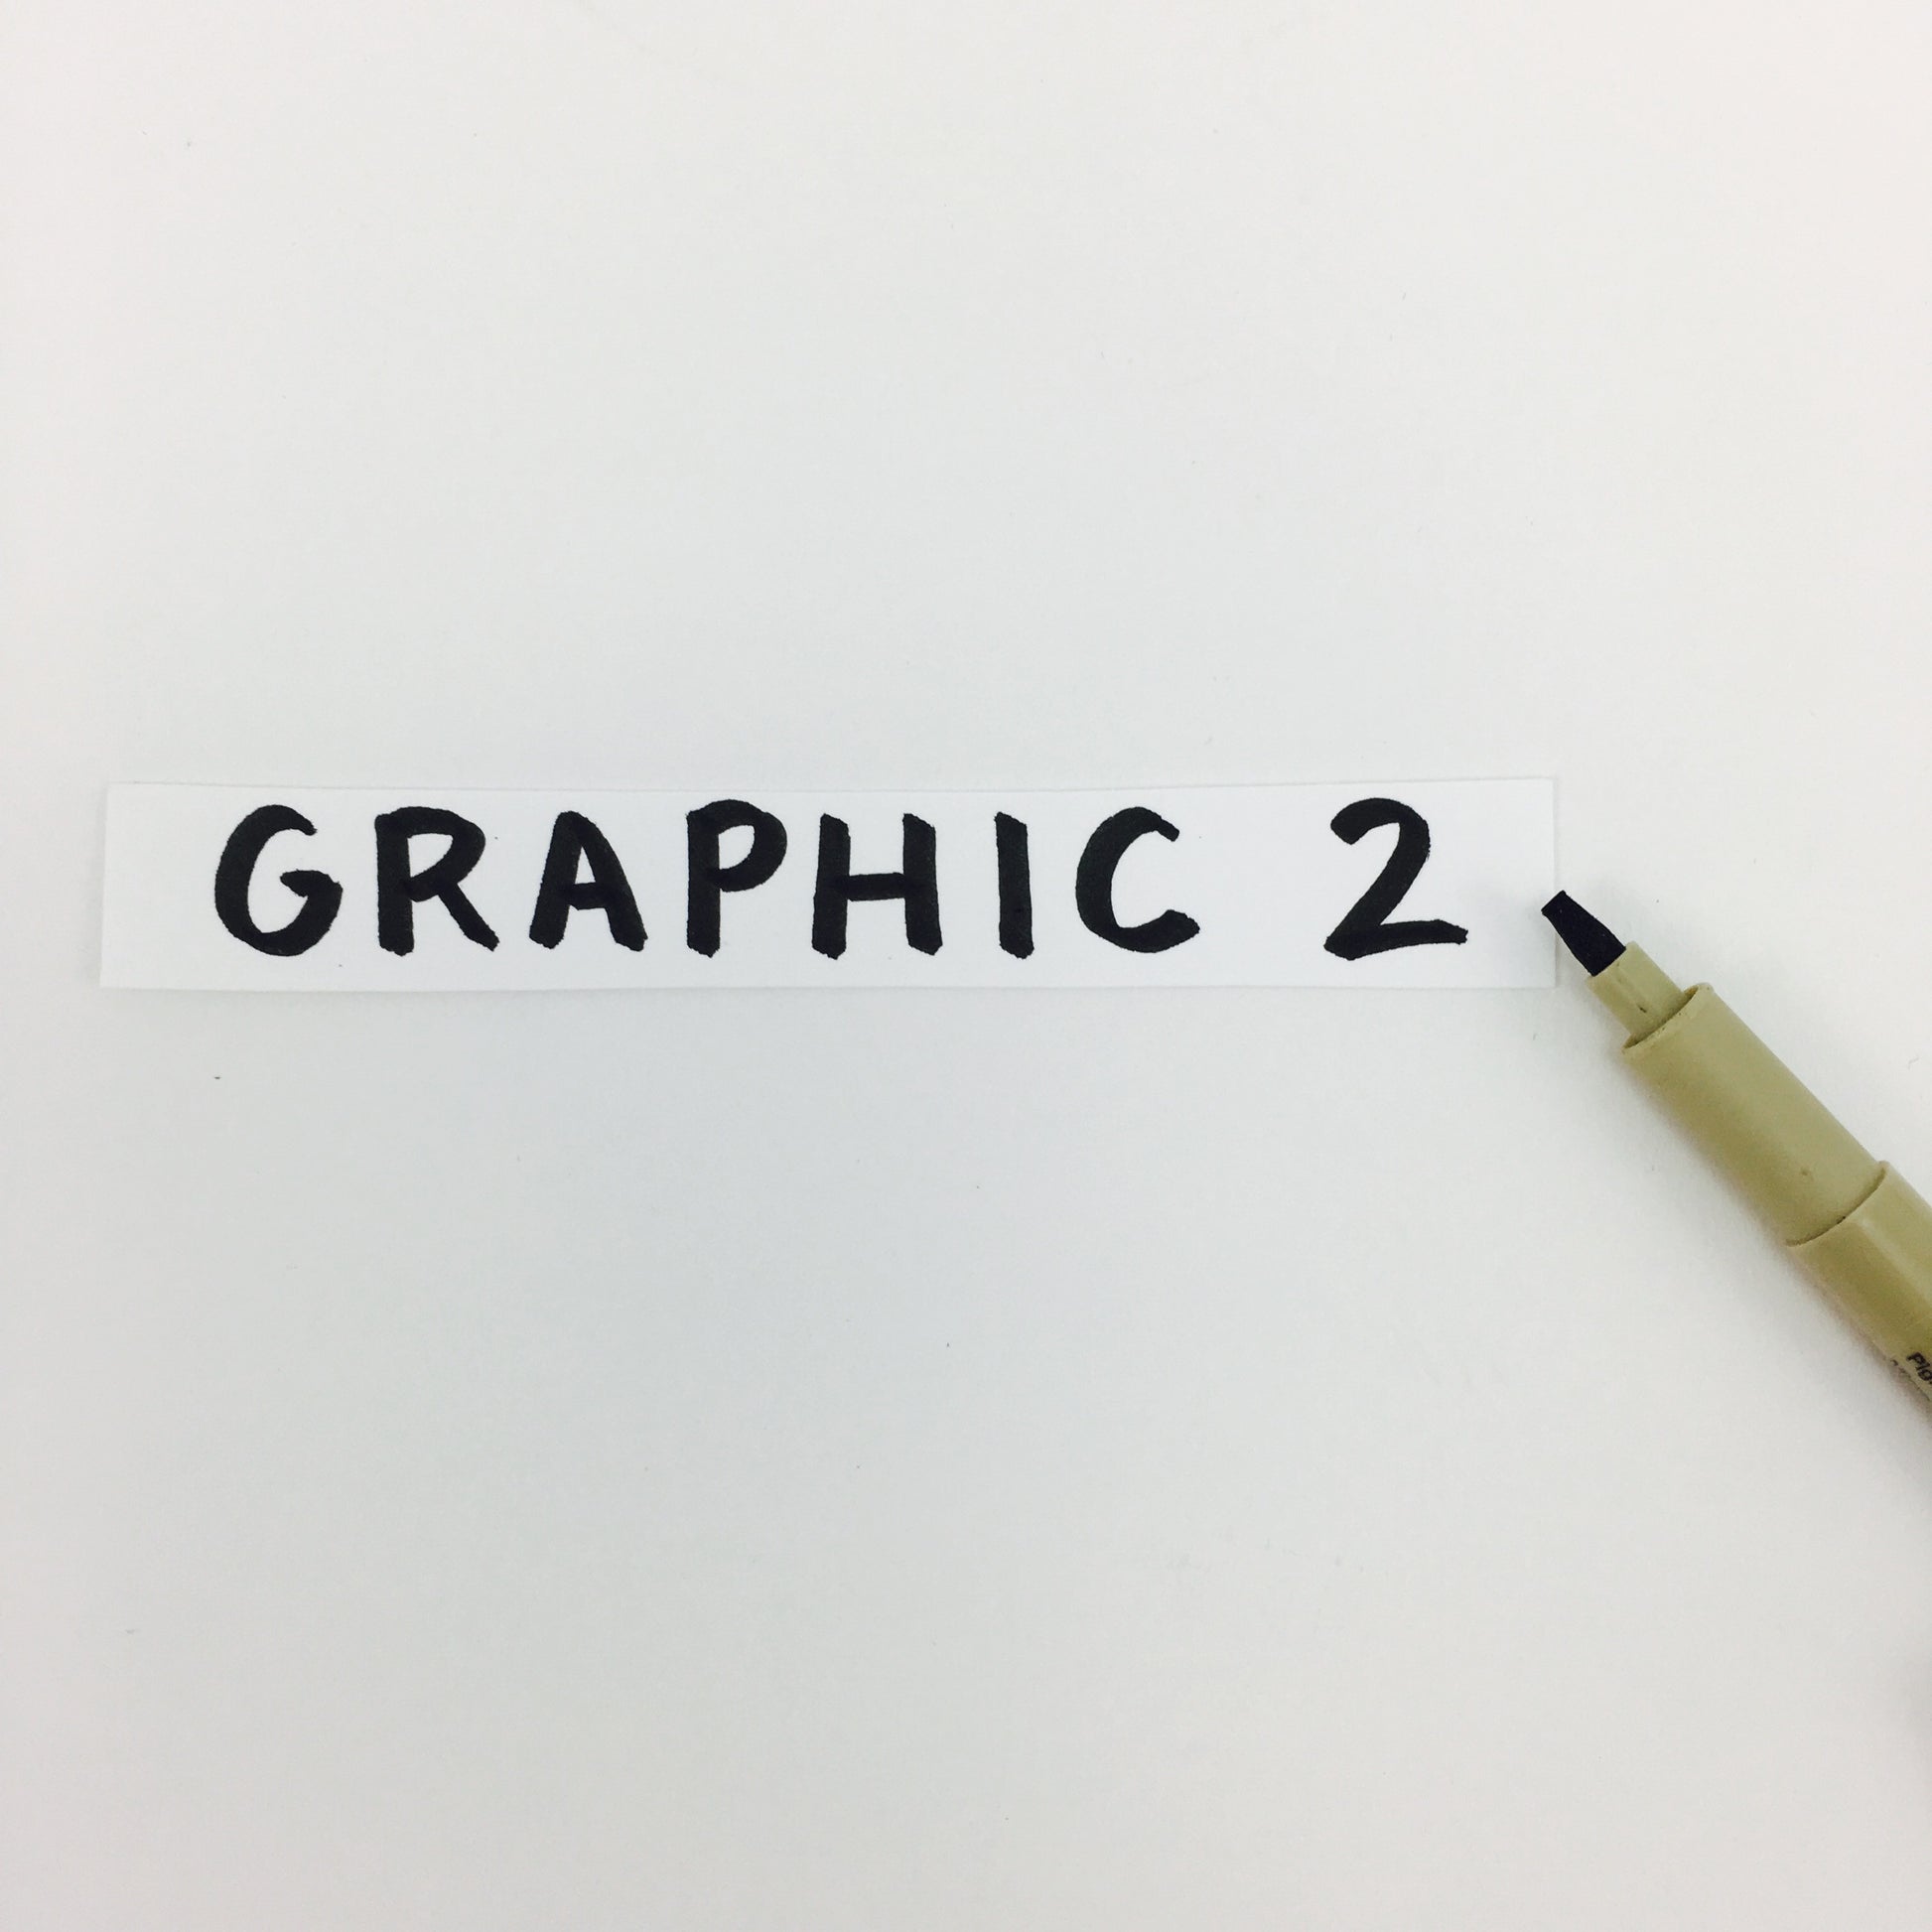 Pigma Graphic Pen - Black 3.0 mm - Sakura